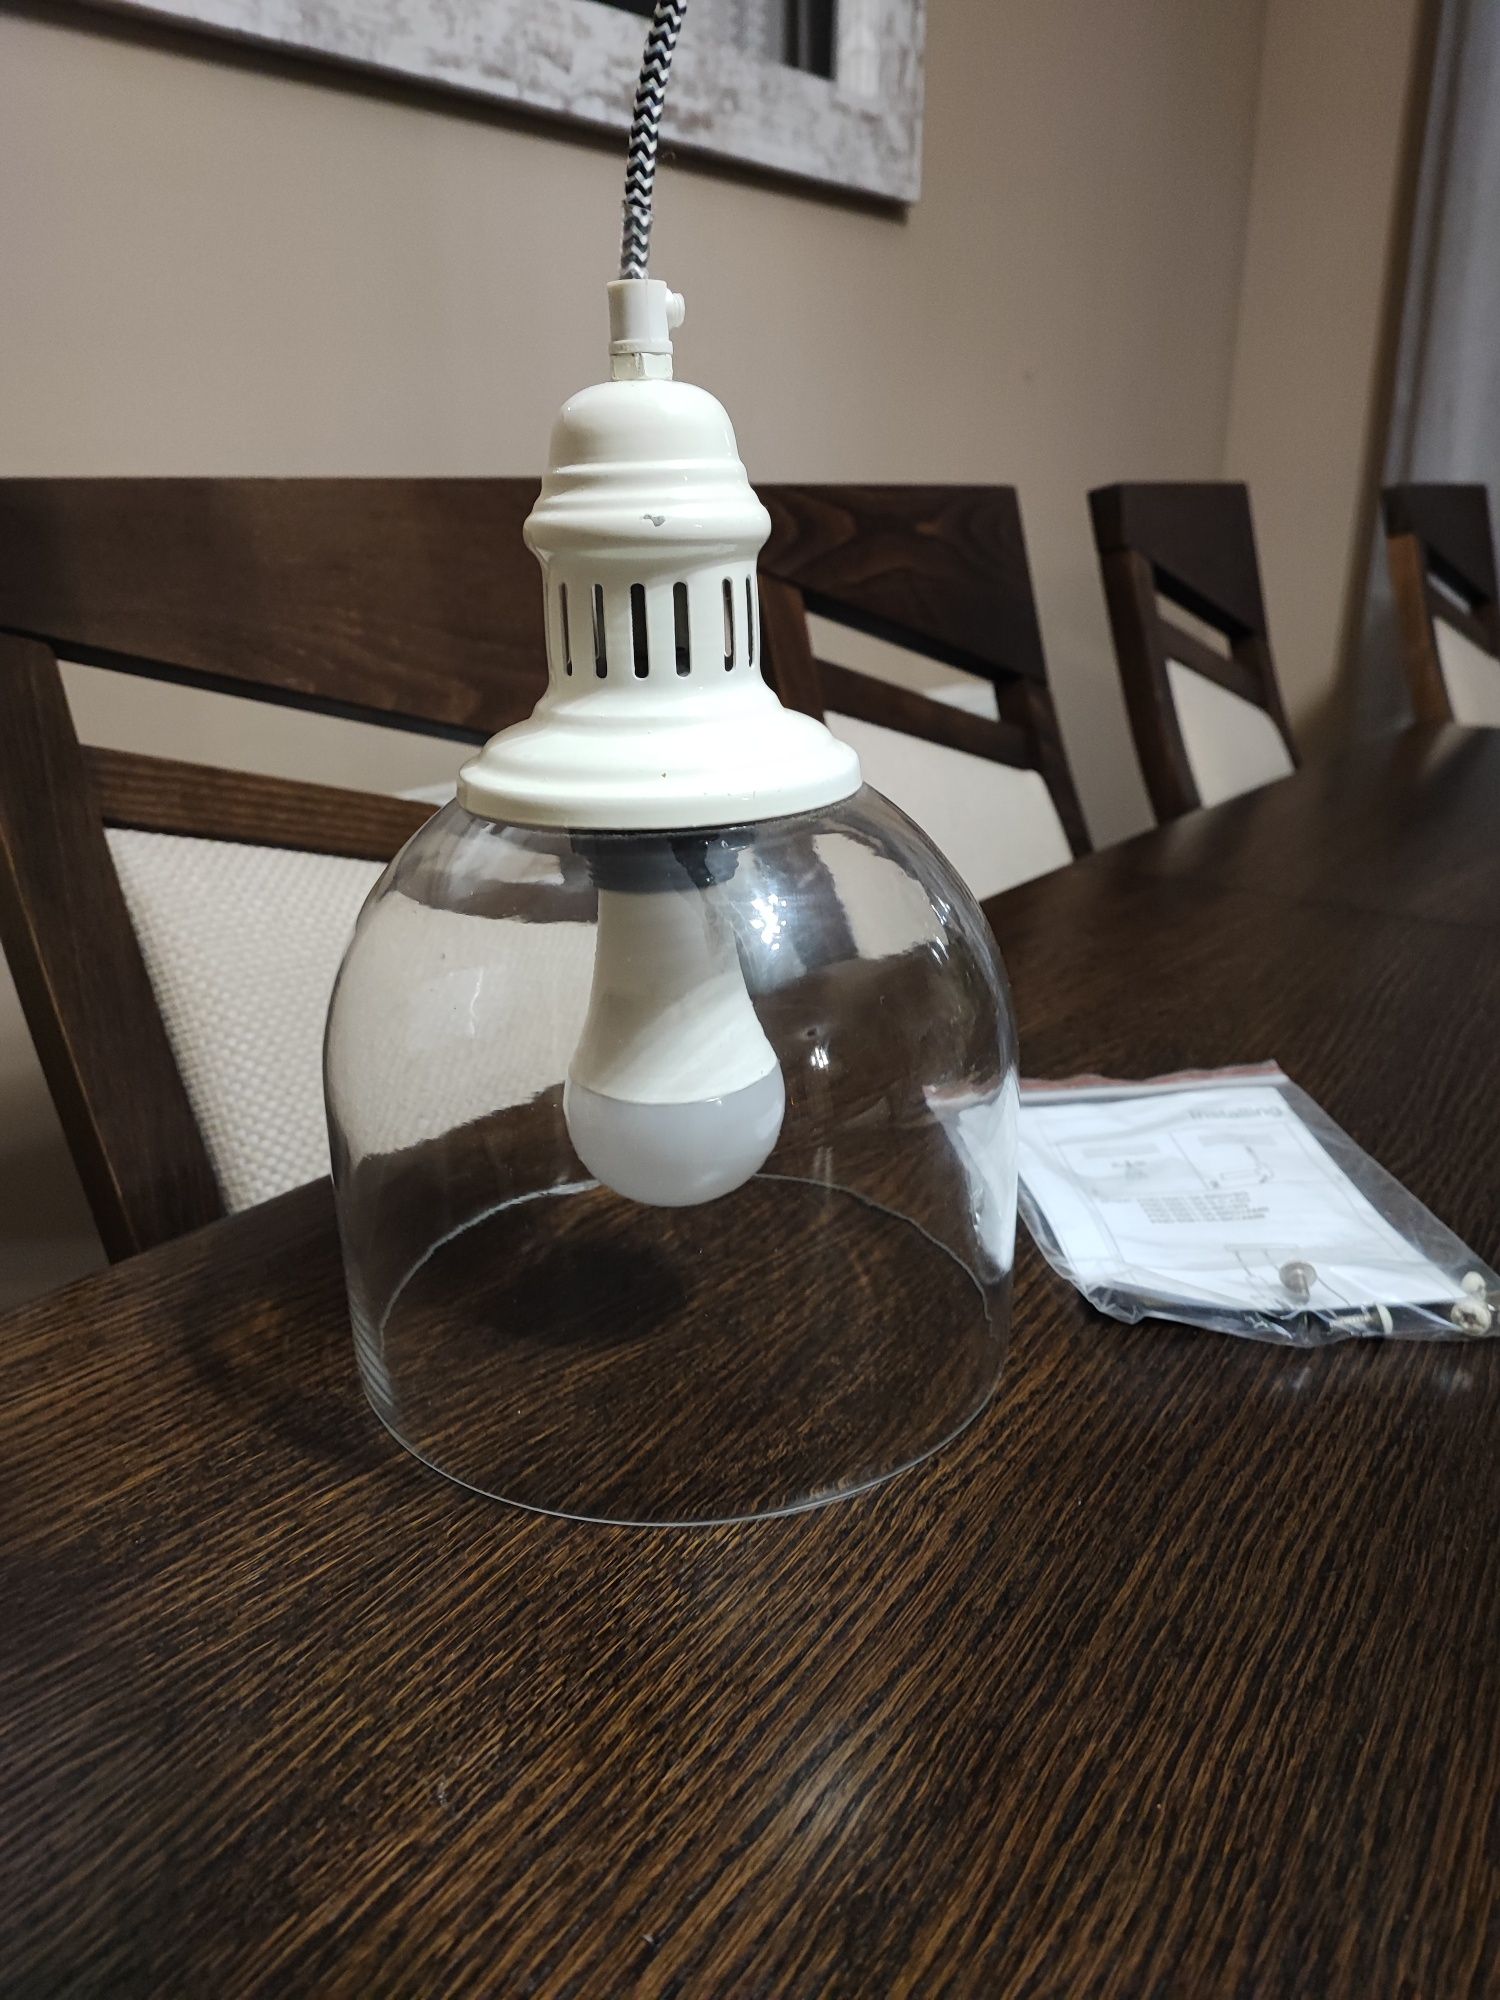 Lampa sufitowa szklana